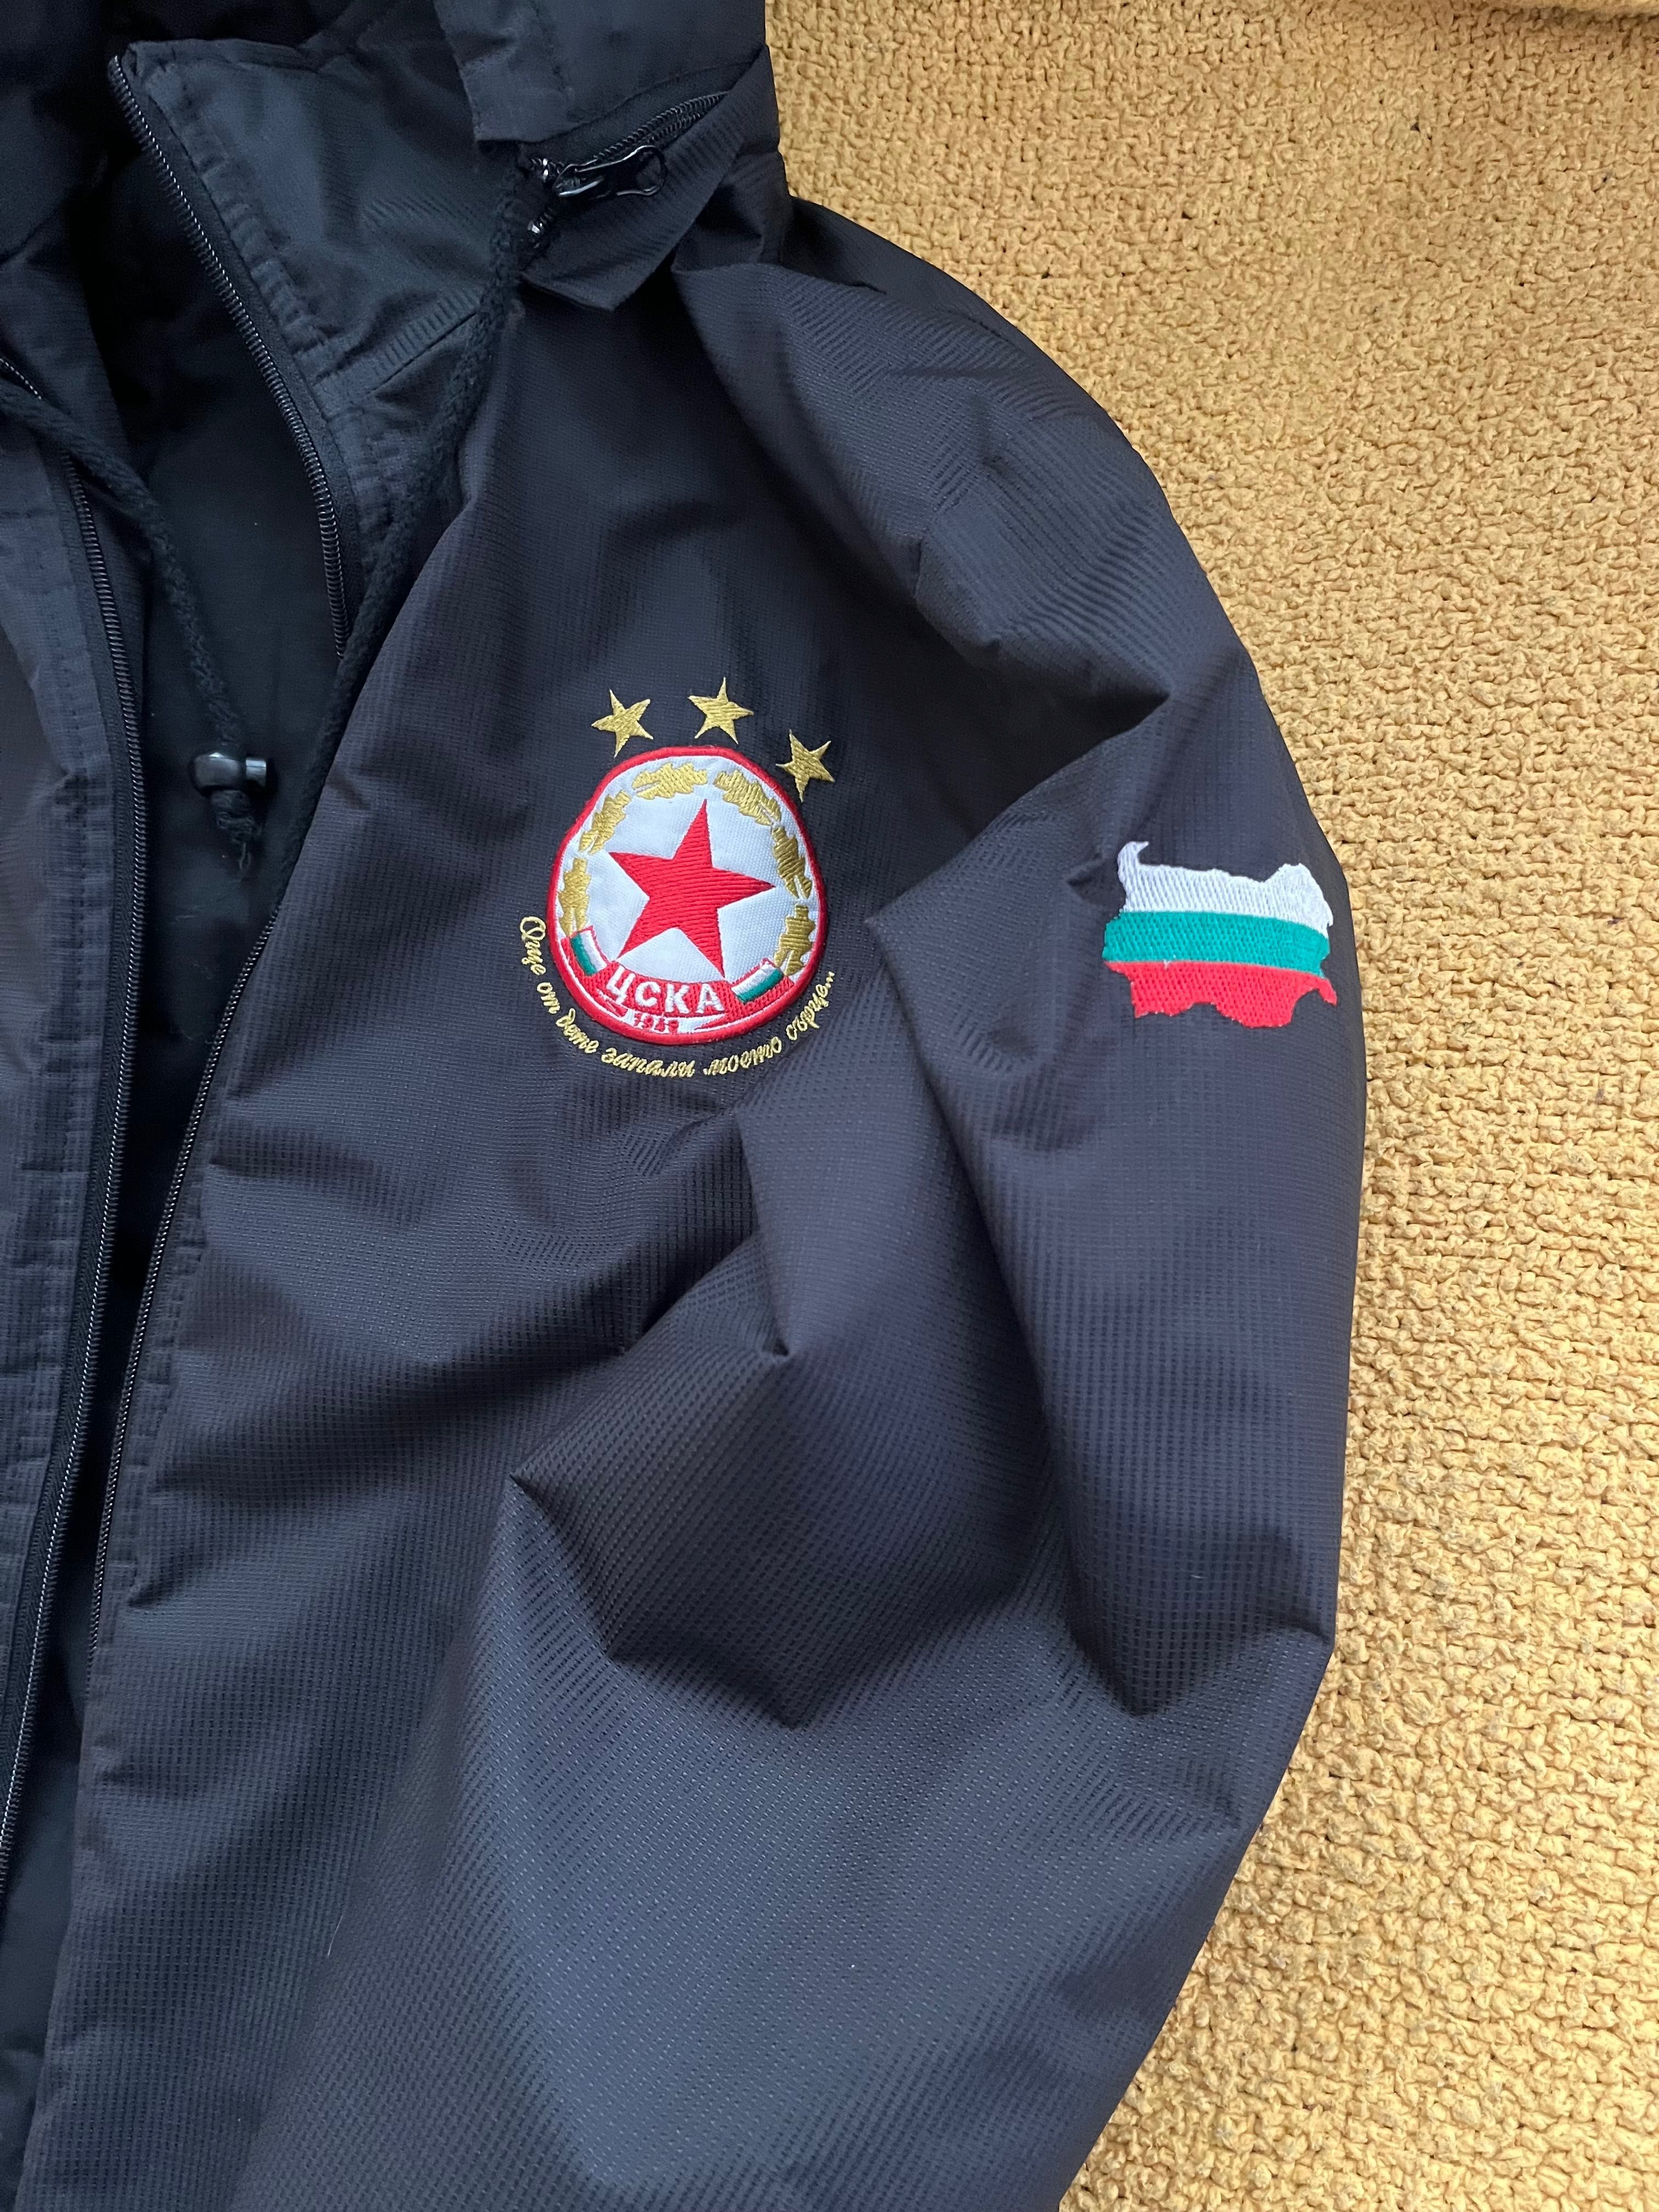 Детско яке на ЦСКА, в отлично състояние, обличано е много малко.